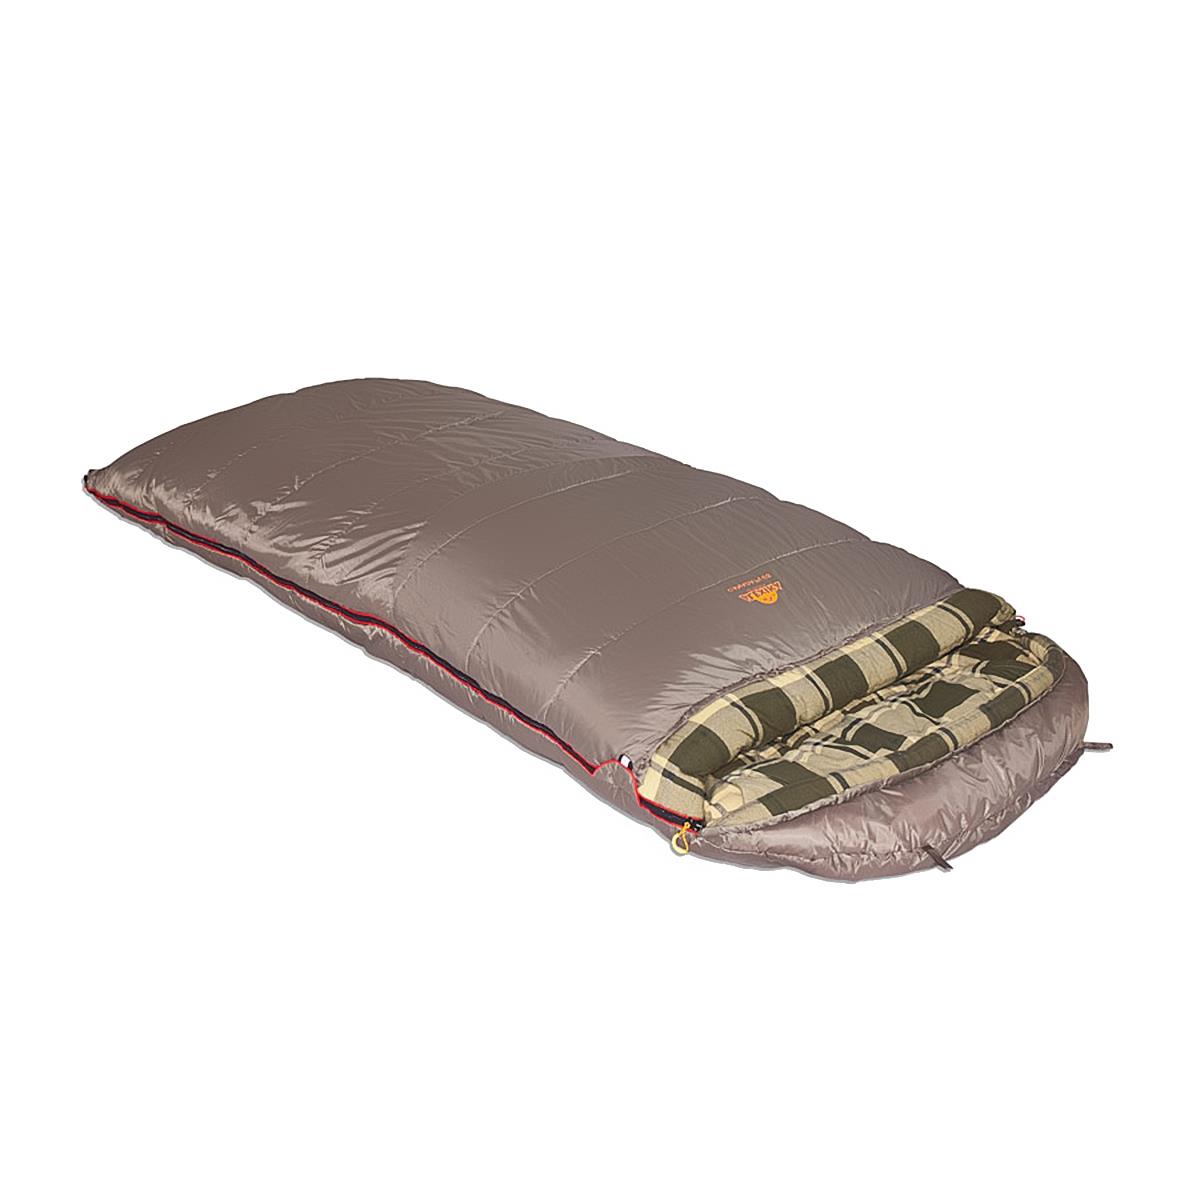 Мешок спальный CANADA Plus одеяло, серый левый (9266.01072) ALEXIKA спальный мешок туристический 220 х 75 см до 20 градусов 700 г м2 цвет оливковый